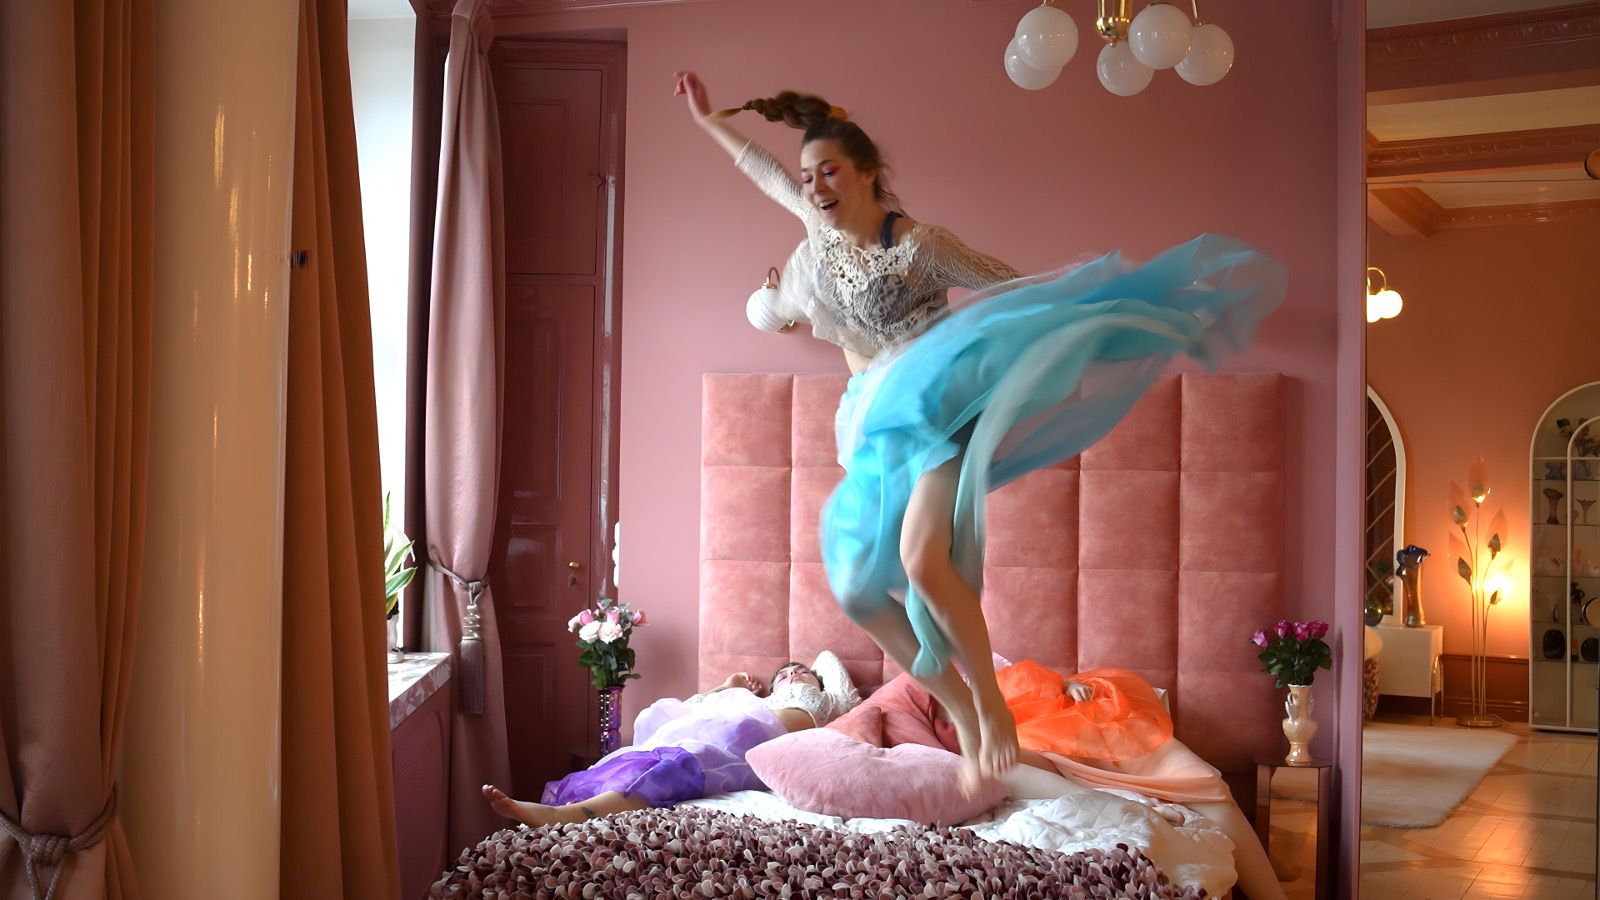 Kuvassa on  on tanssija hyppäämässä sängyn päällä roosan värisessä huoneessa ja taustalla näkyy toista huonetta. Tanssijalla on vaalean sininen tyllihame ja vaalea pusero.